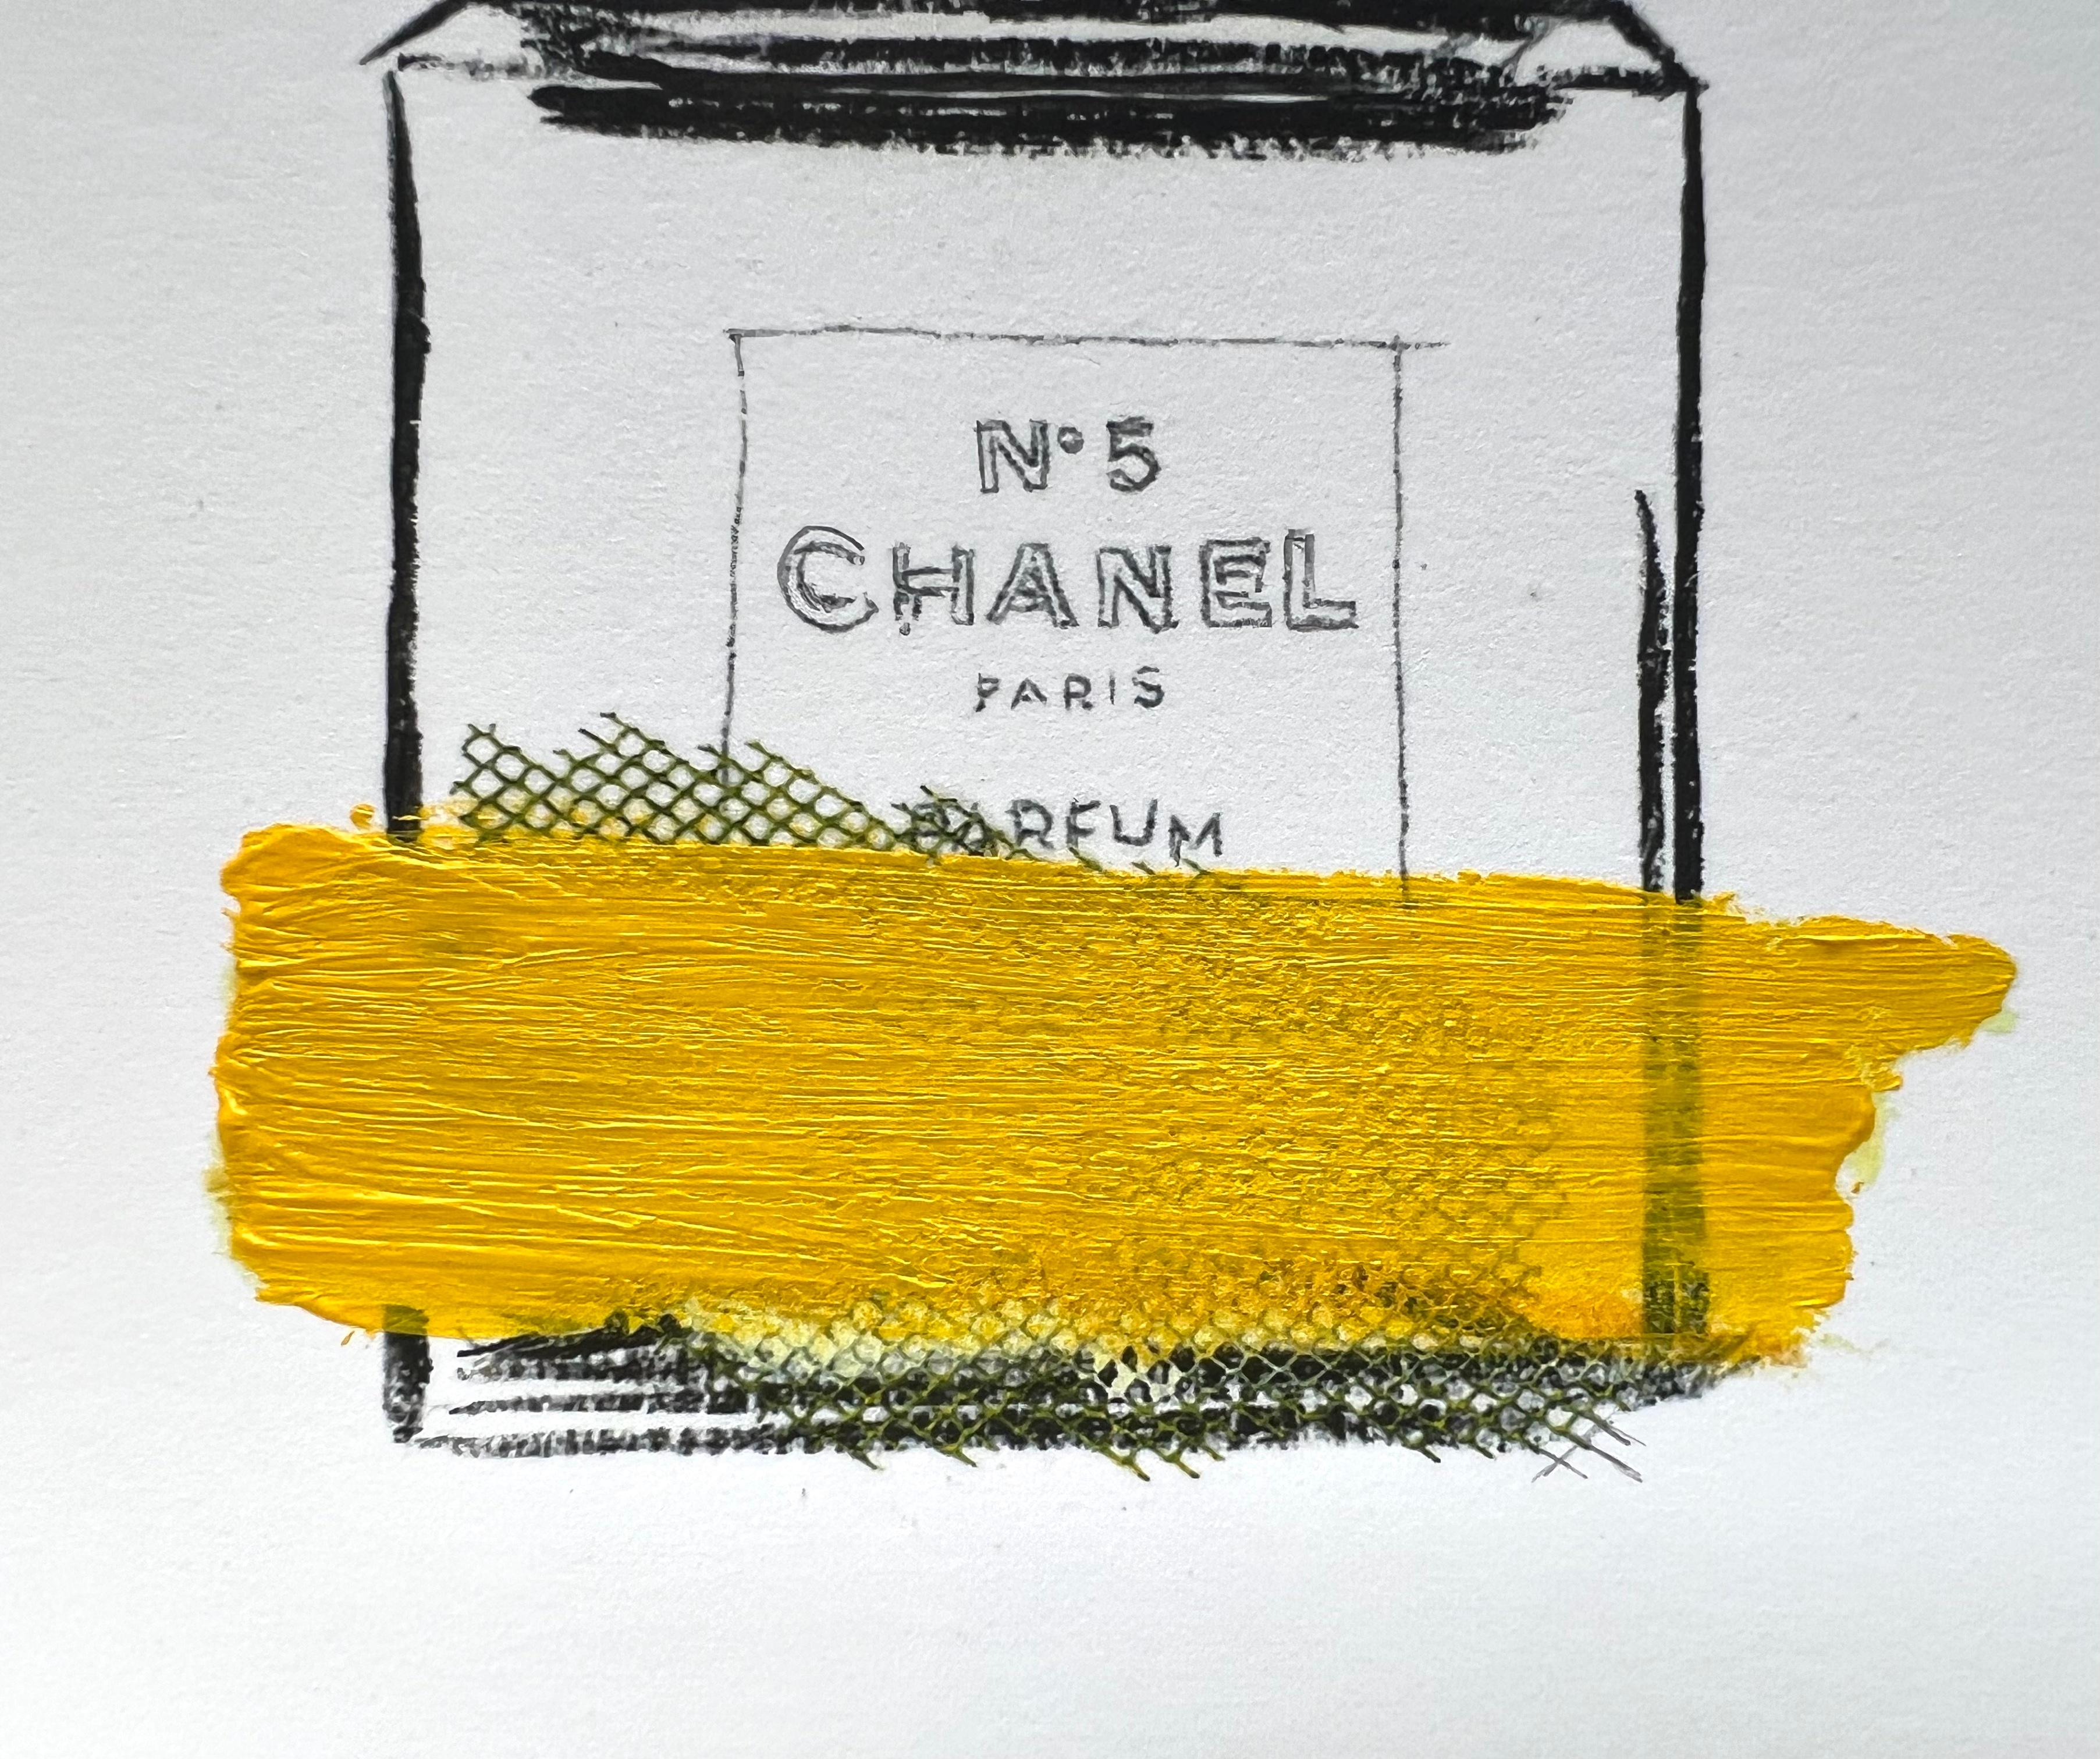 Hommage an das kultige Parfüm Chanel No. 5. Dieser verspielte, einzigartige Giclèe-Druck ist auf archivtauglichem, säurefreiem Kaltpresspapier gedruckt. Der üppige, gelbe Pinselstrich ist handgemalt und verleiht dem Druck eine einzigartige Qualität.